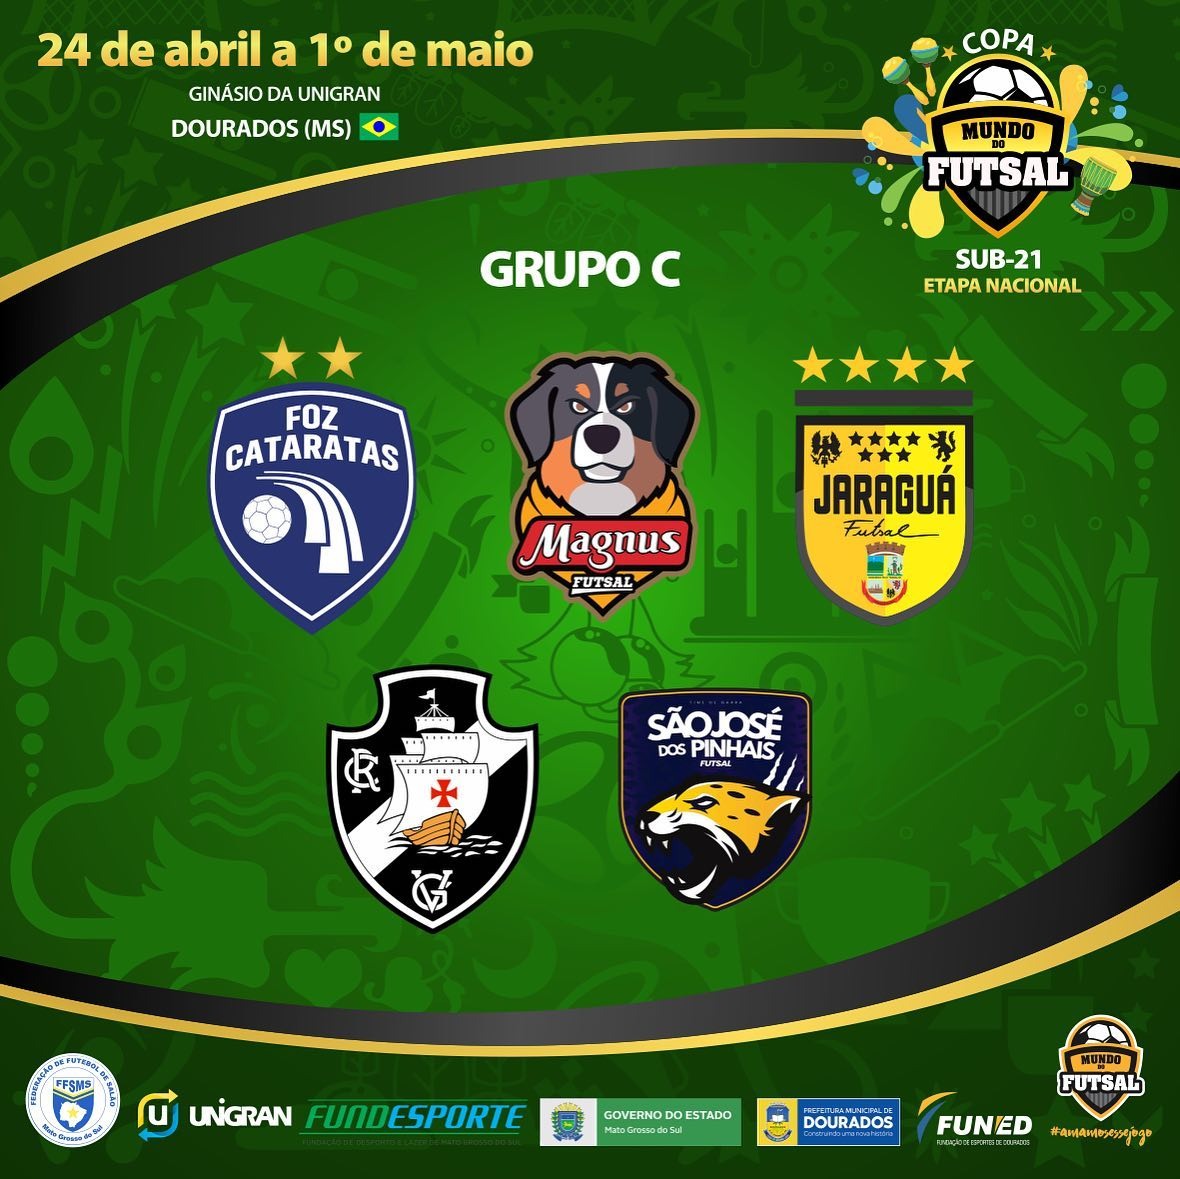 Divulgados os confrontos da primeira fase da Copa Mundo do Futsal Sub-21, em Dourados